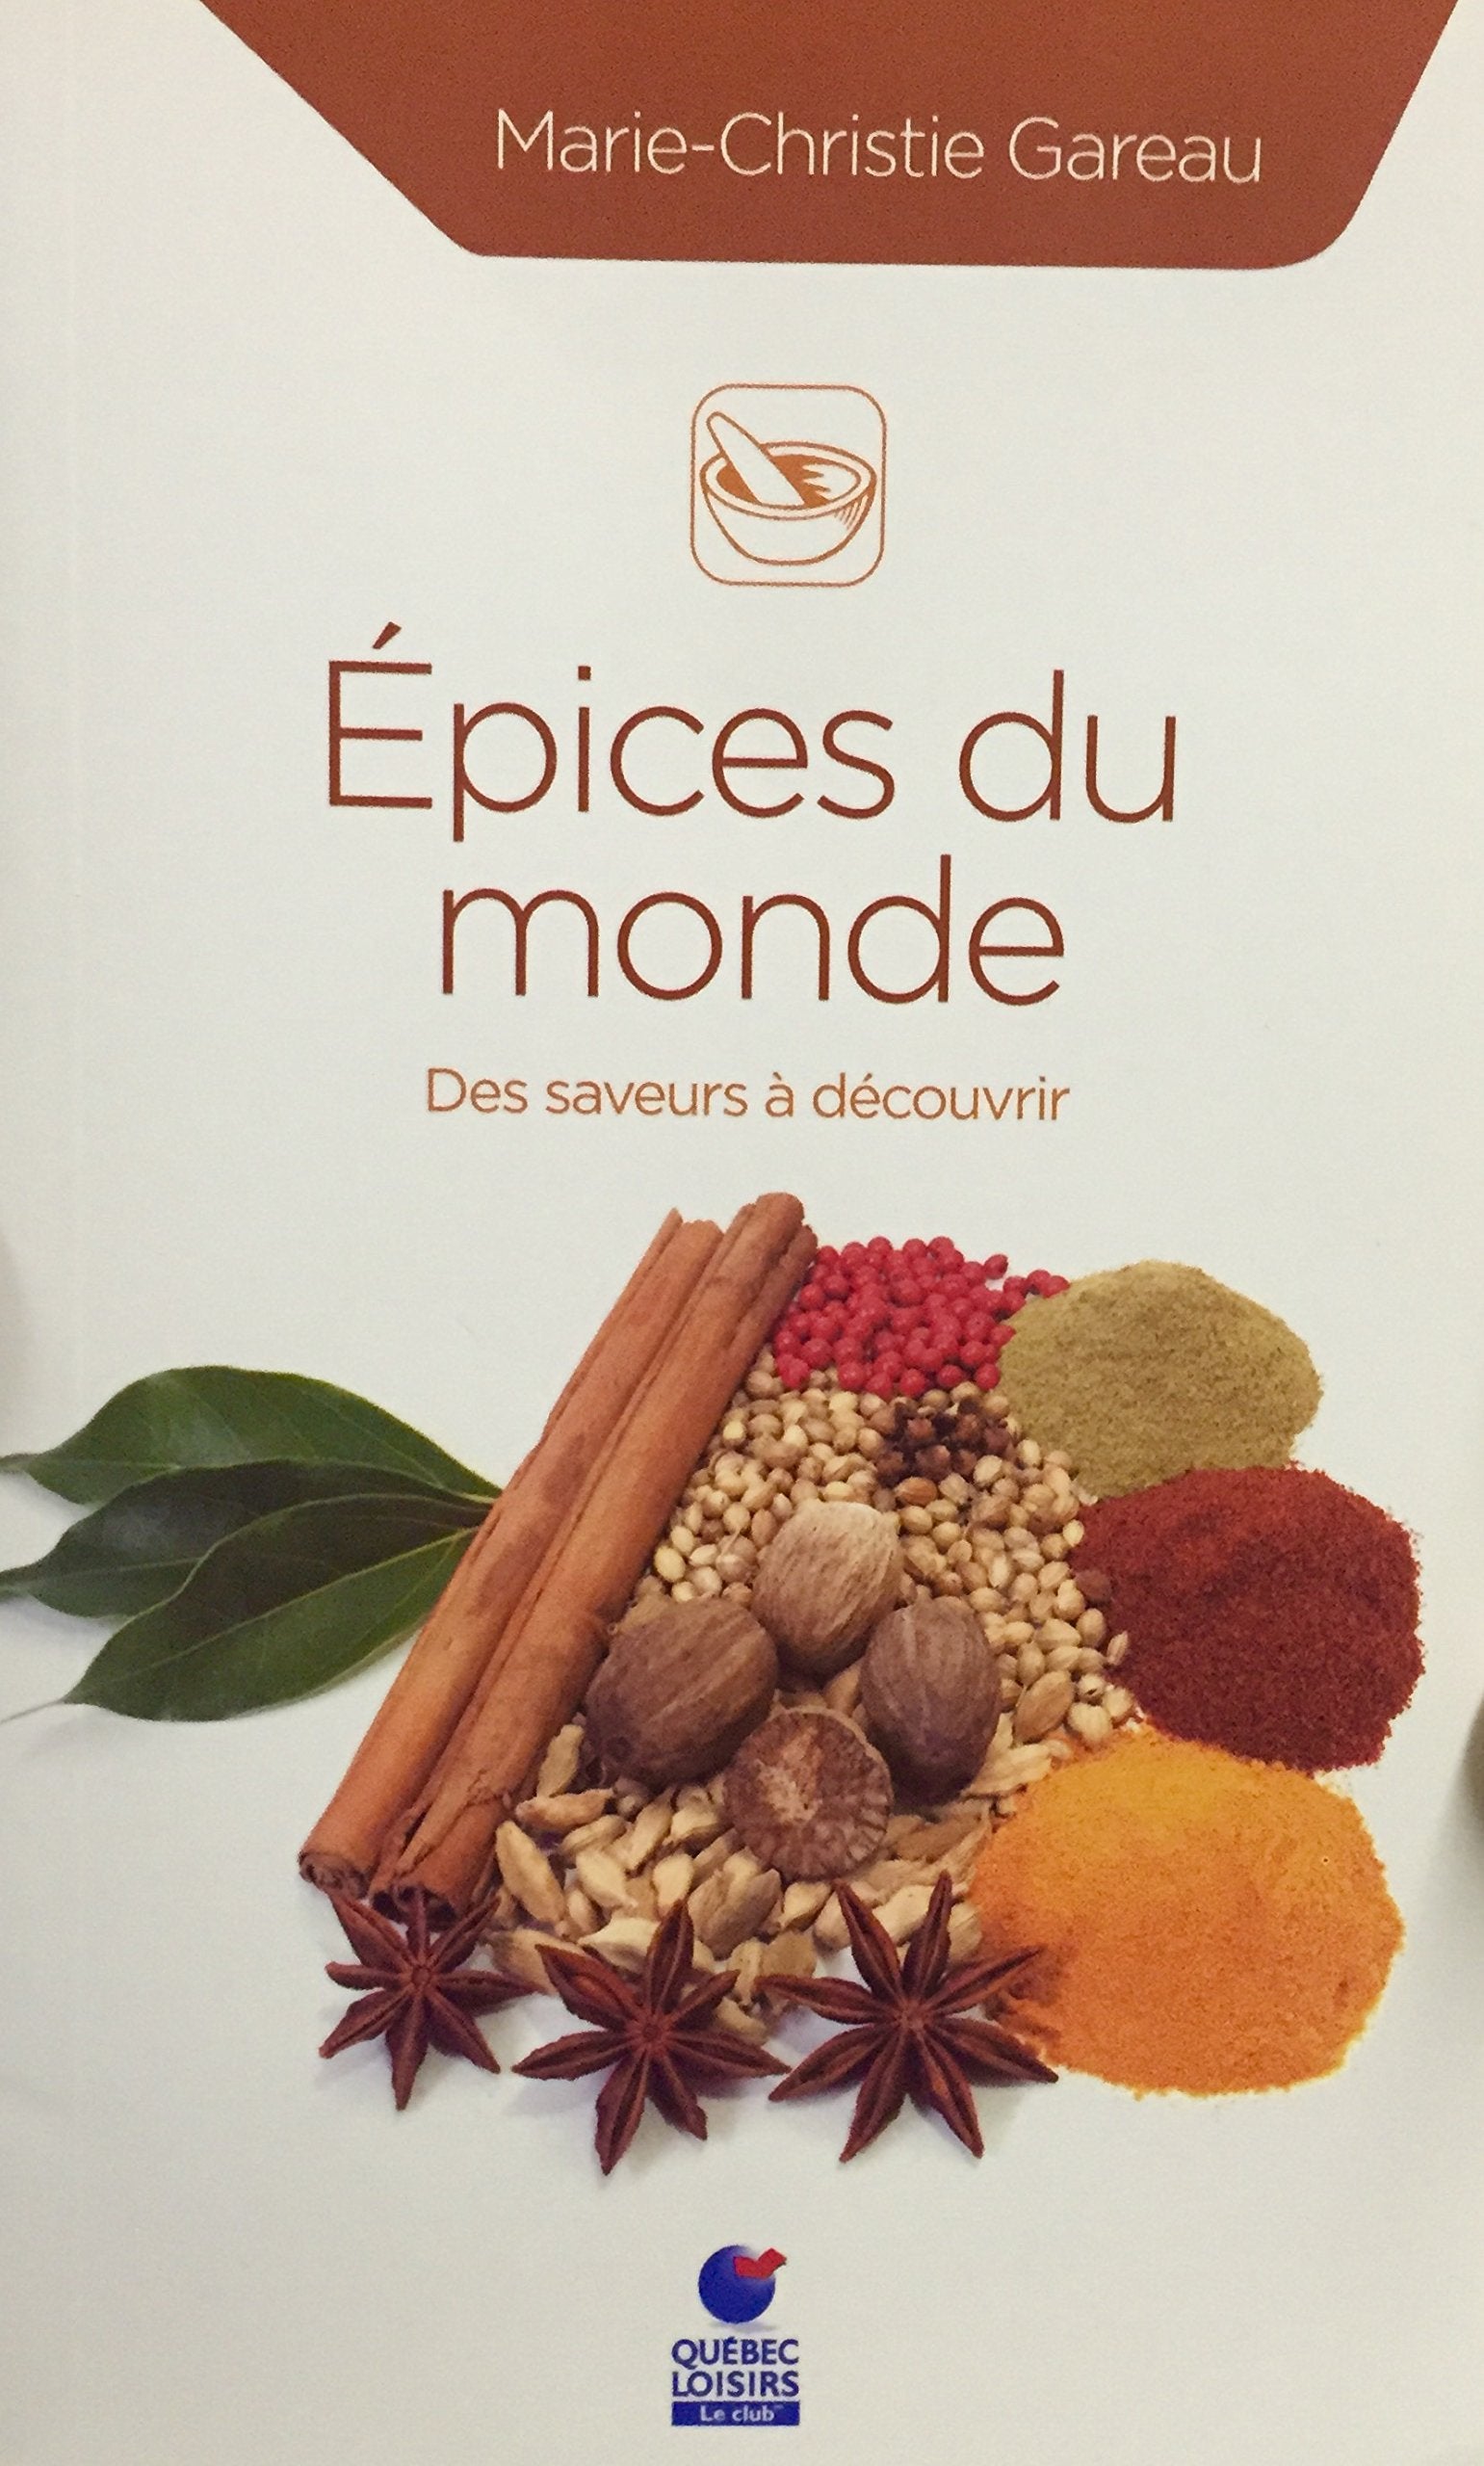 Livre ISBN 2896661565 Épices du monde : Des saveurs à découvrir (Marie-Christie Gareau)